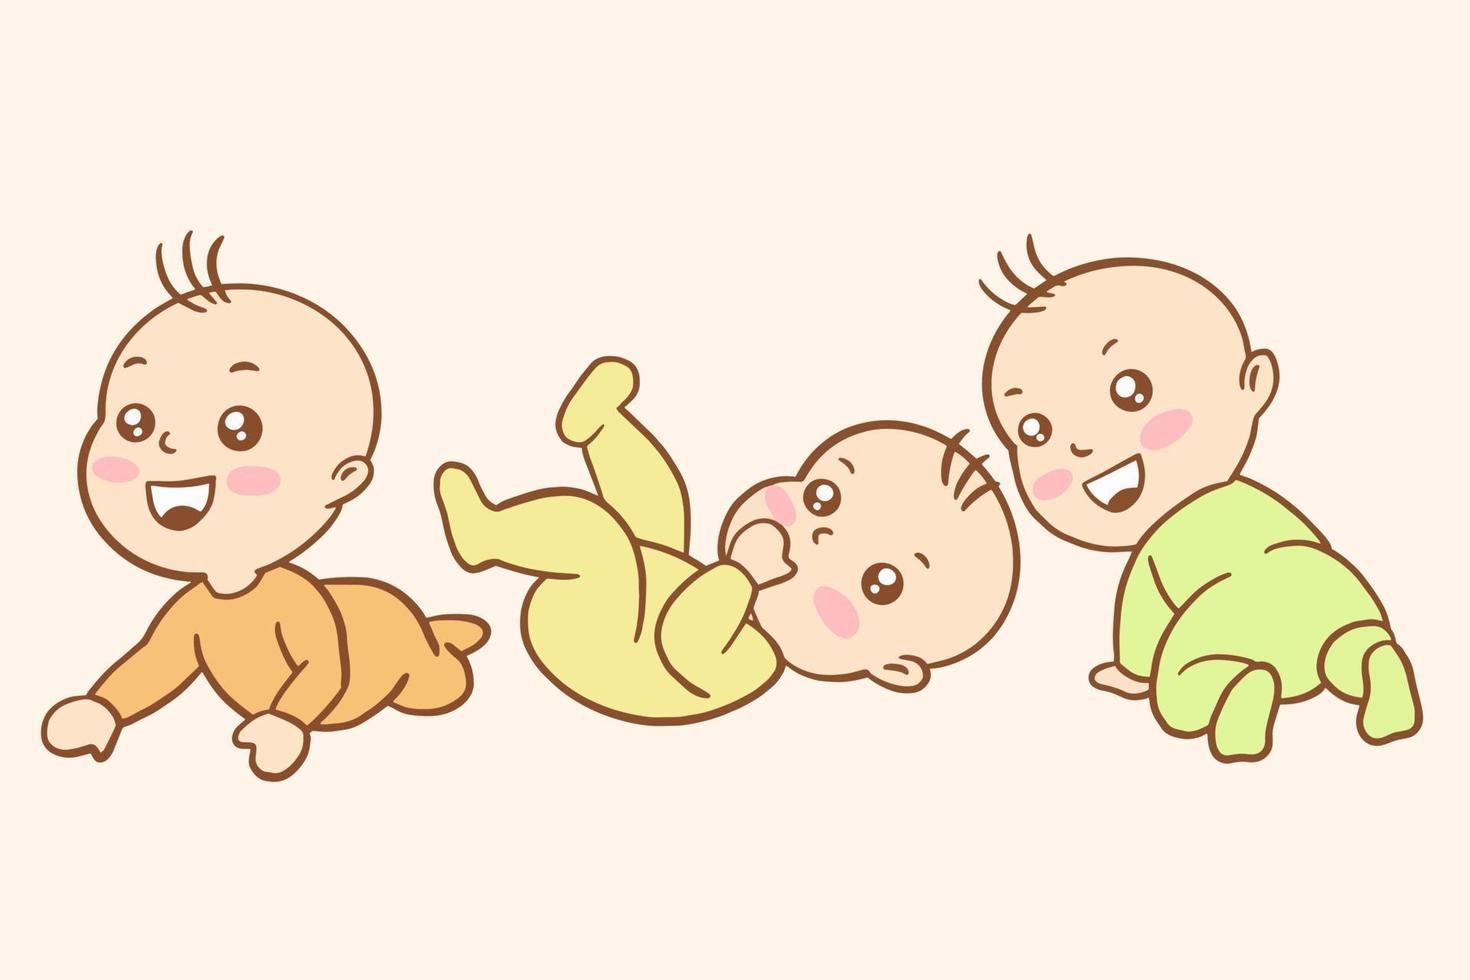 set schattige baby baby's jongen cartoon platte collectie illustratie vector